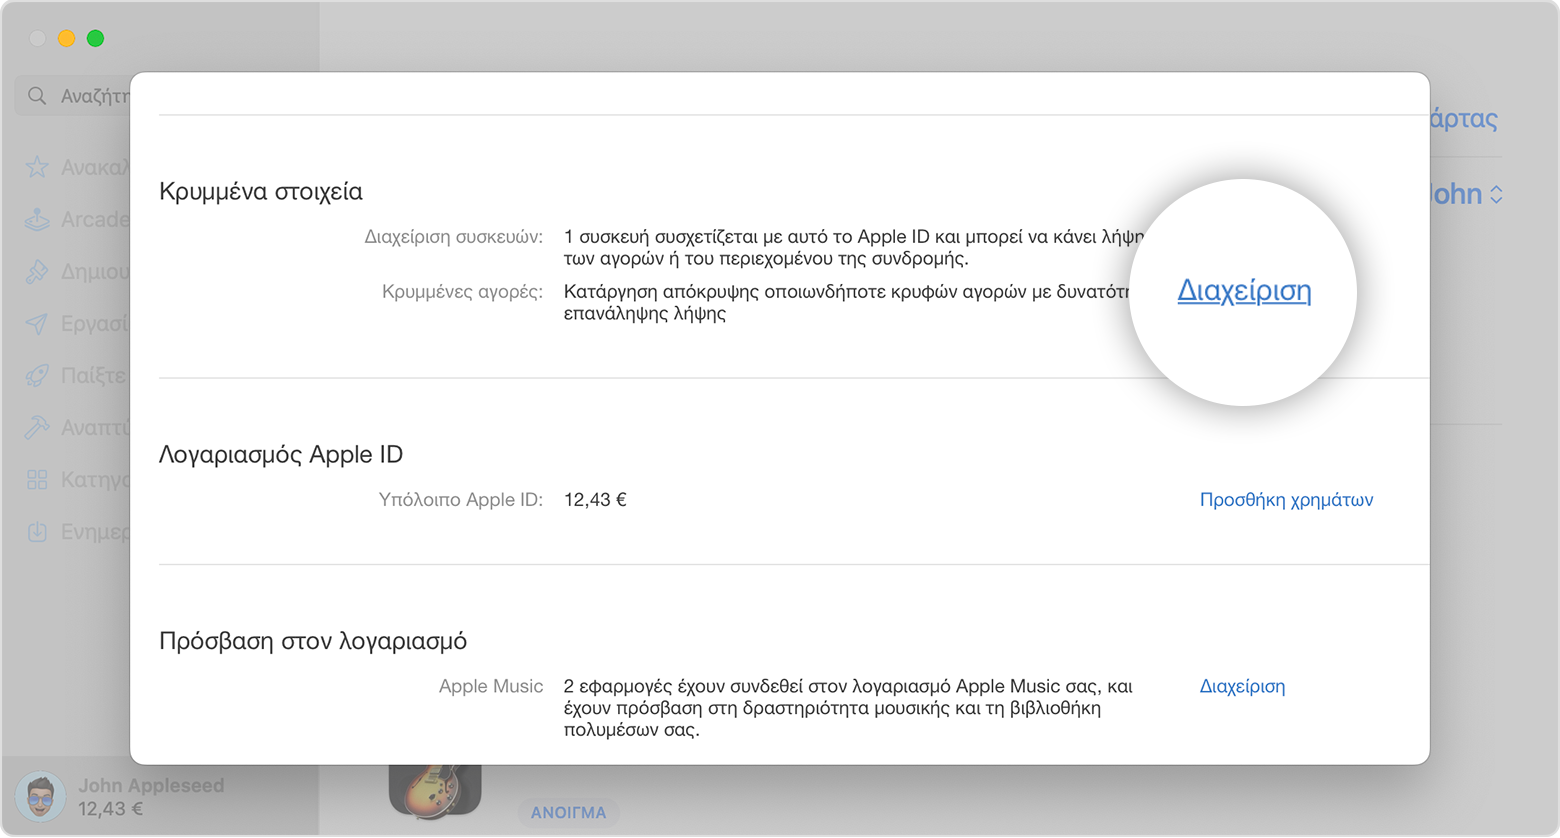 App Store σε Mac στο οποίο εμφανίζεται η ενότητα «Κρυμμένα στοιχεία» της σελίδας πληροφοριών λογαριασμού. Το κουμπί «Διαχείριση» επισημαίνεται στην εικόνα.